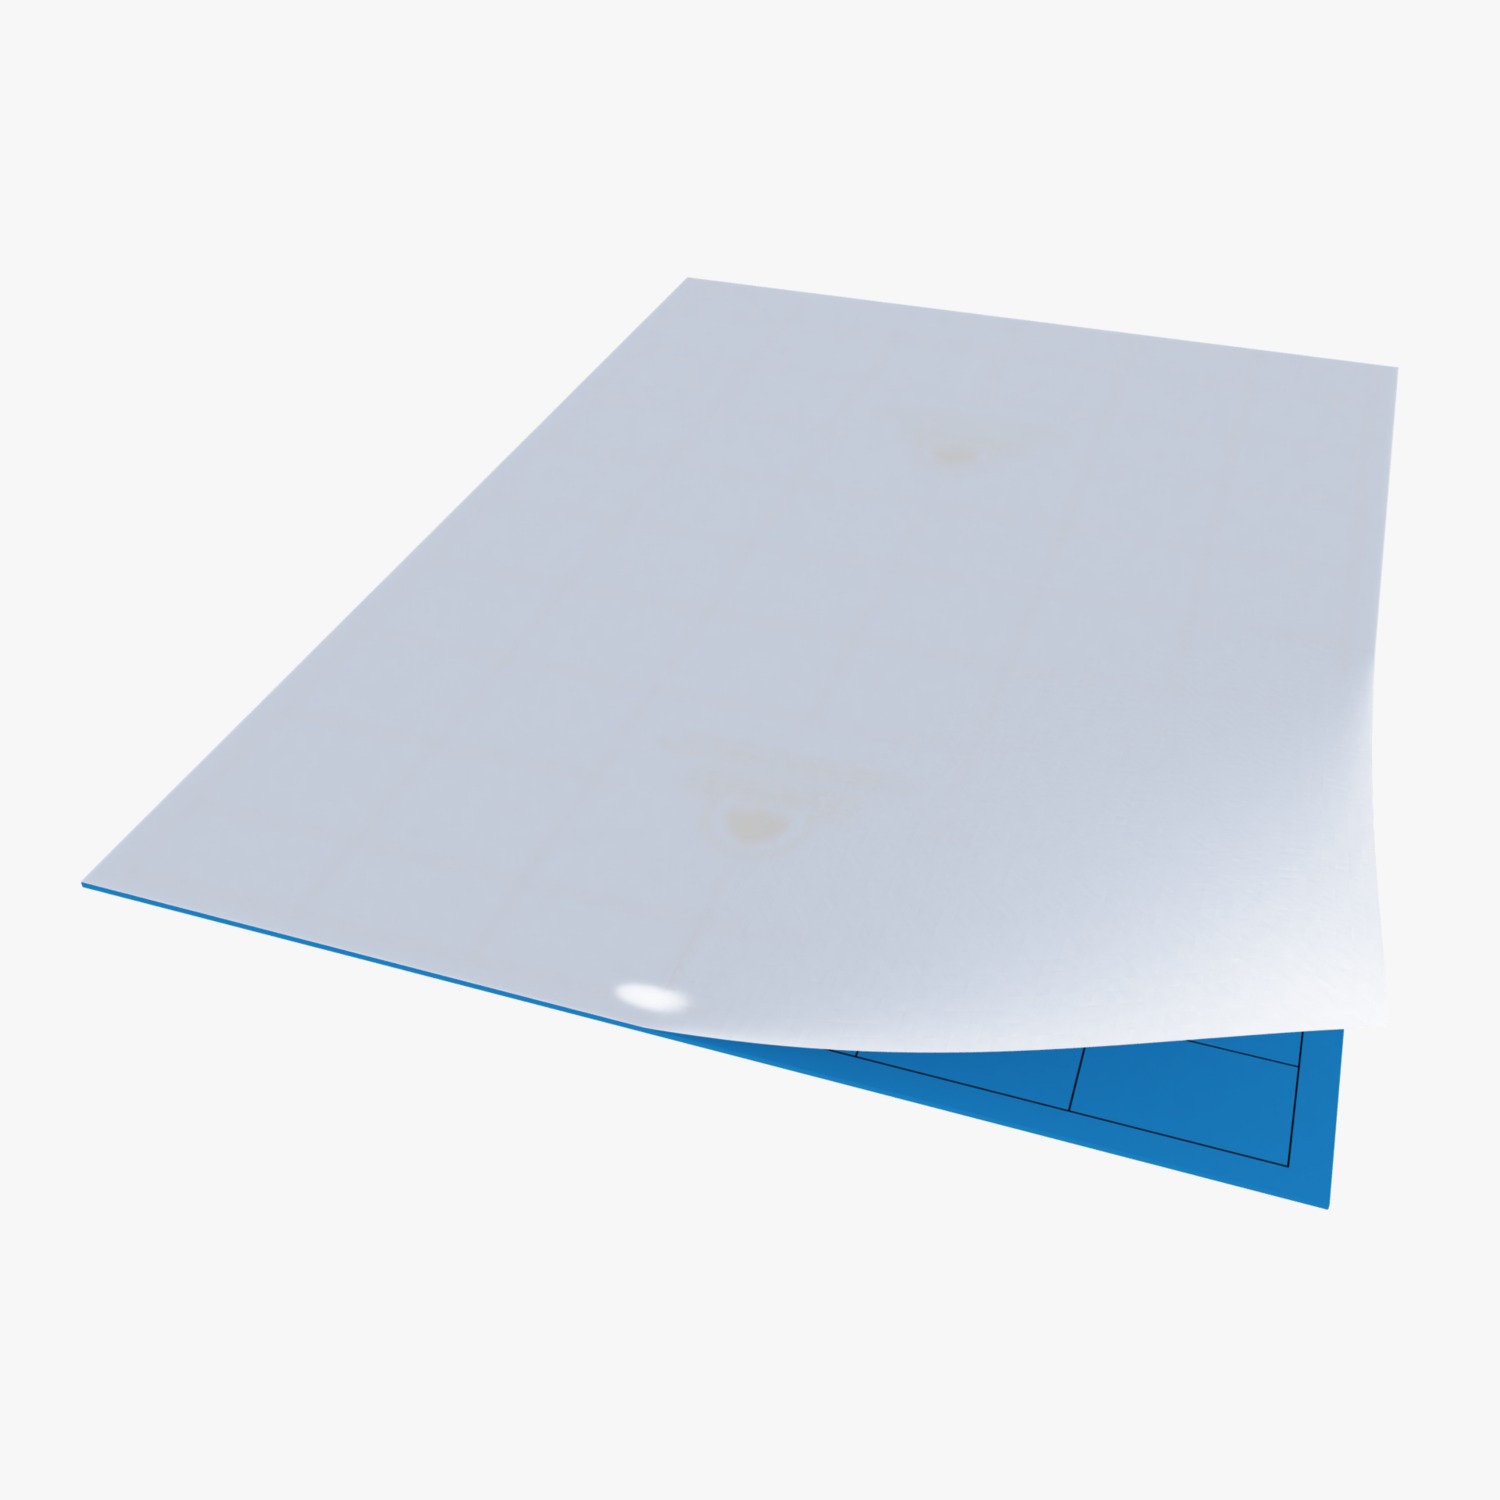 BLUE STICKY TRAP(22cm X 28cm)